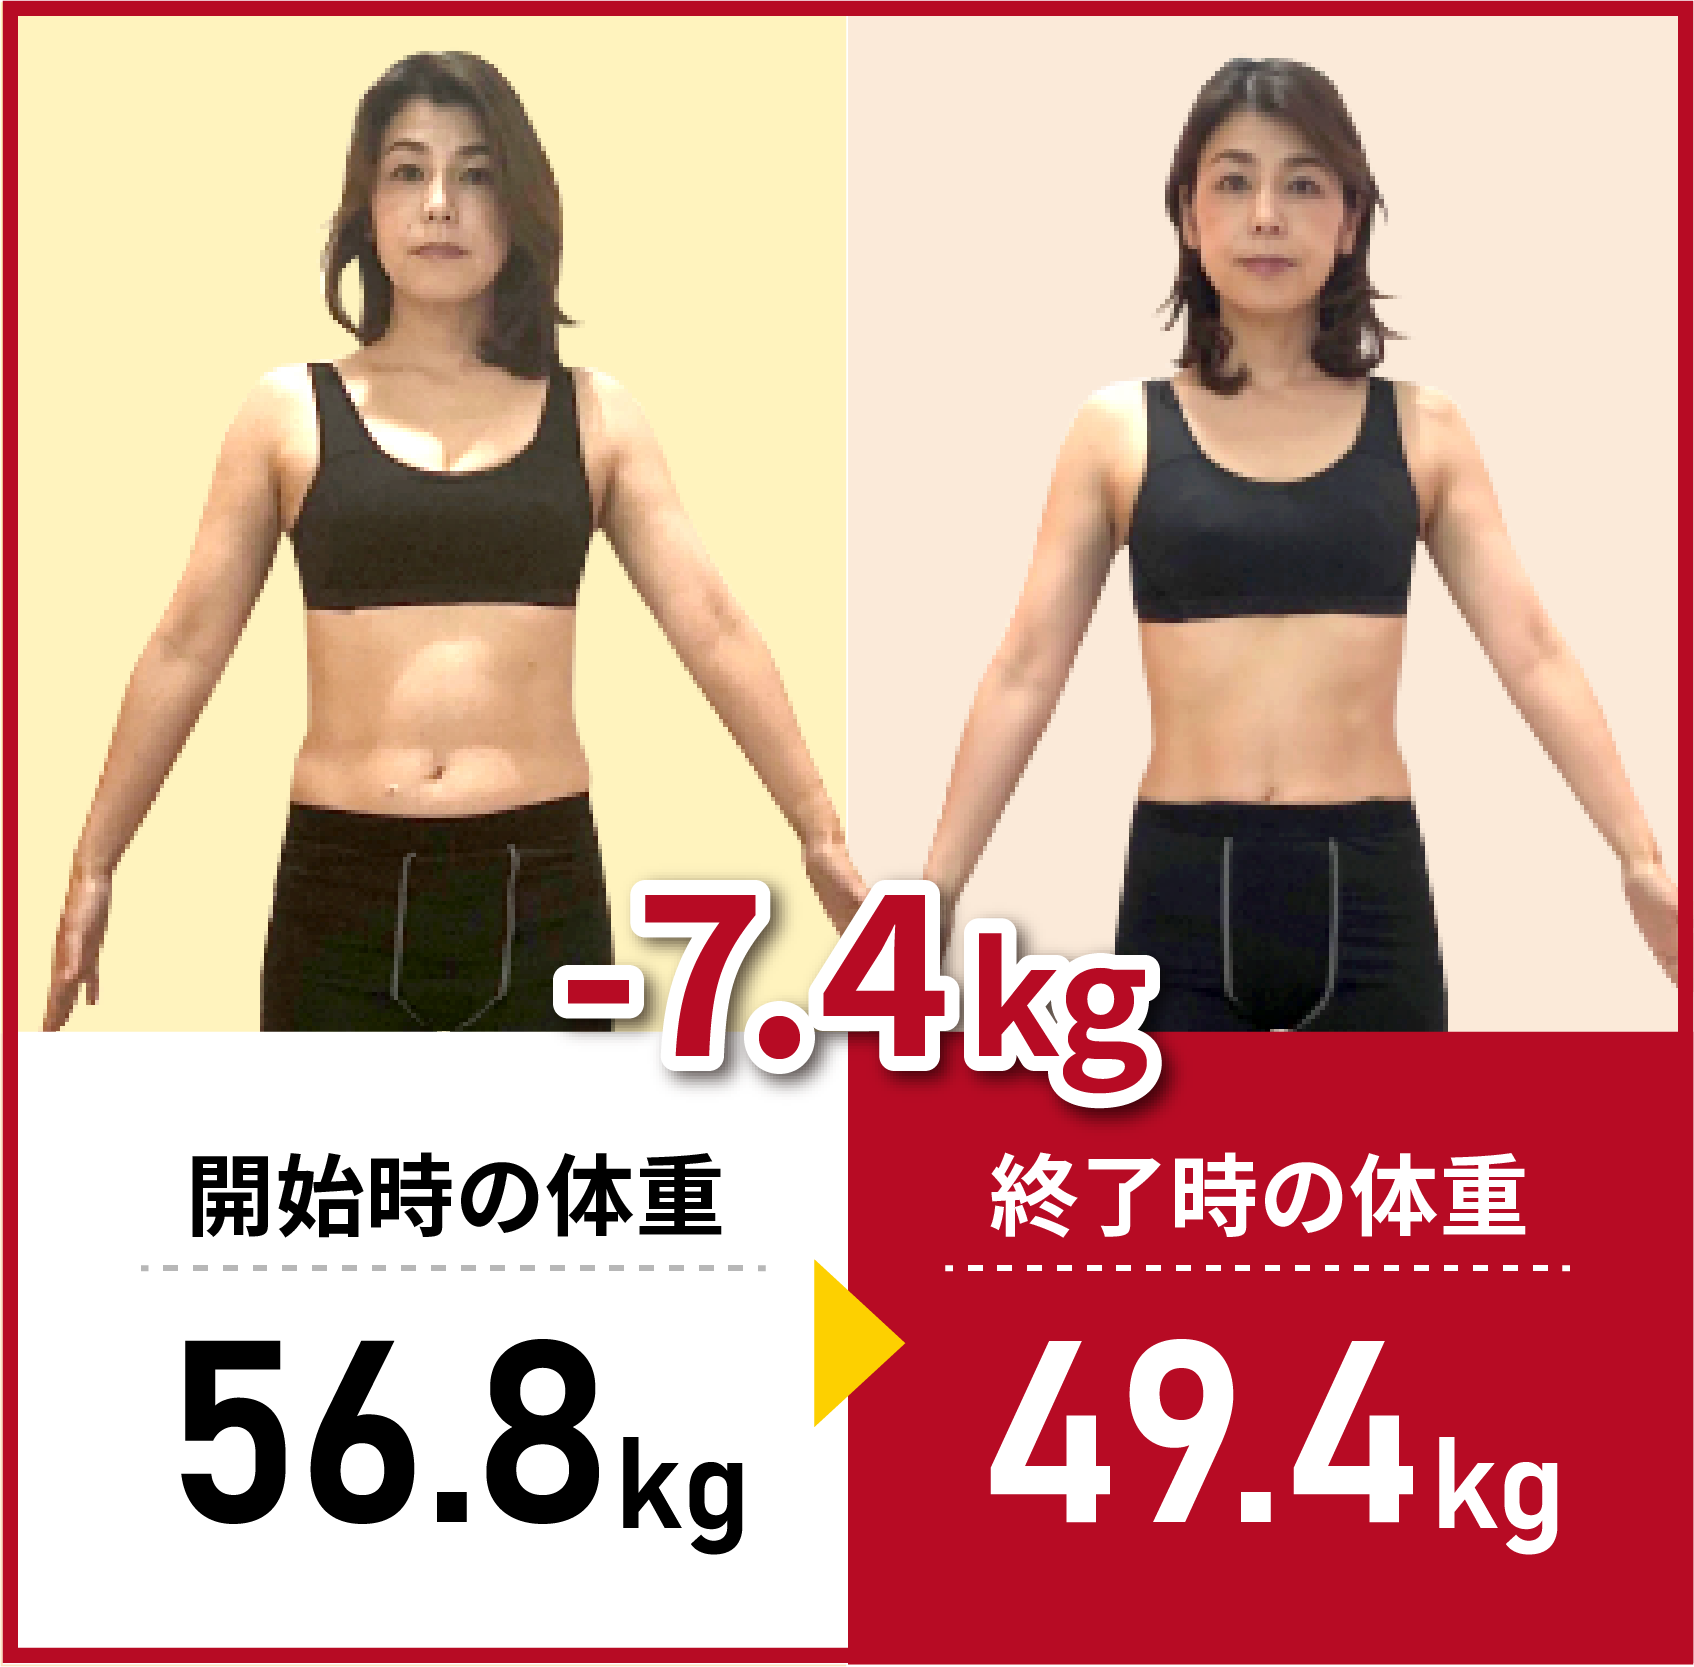 開始時の体重56.8kg→終了時の体重49.4kg